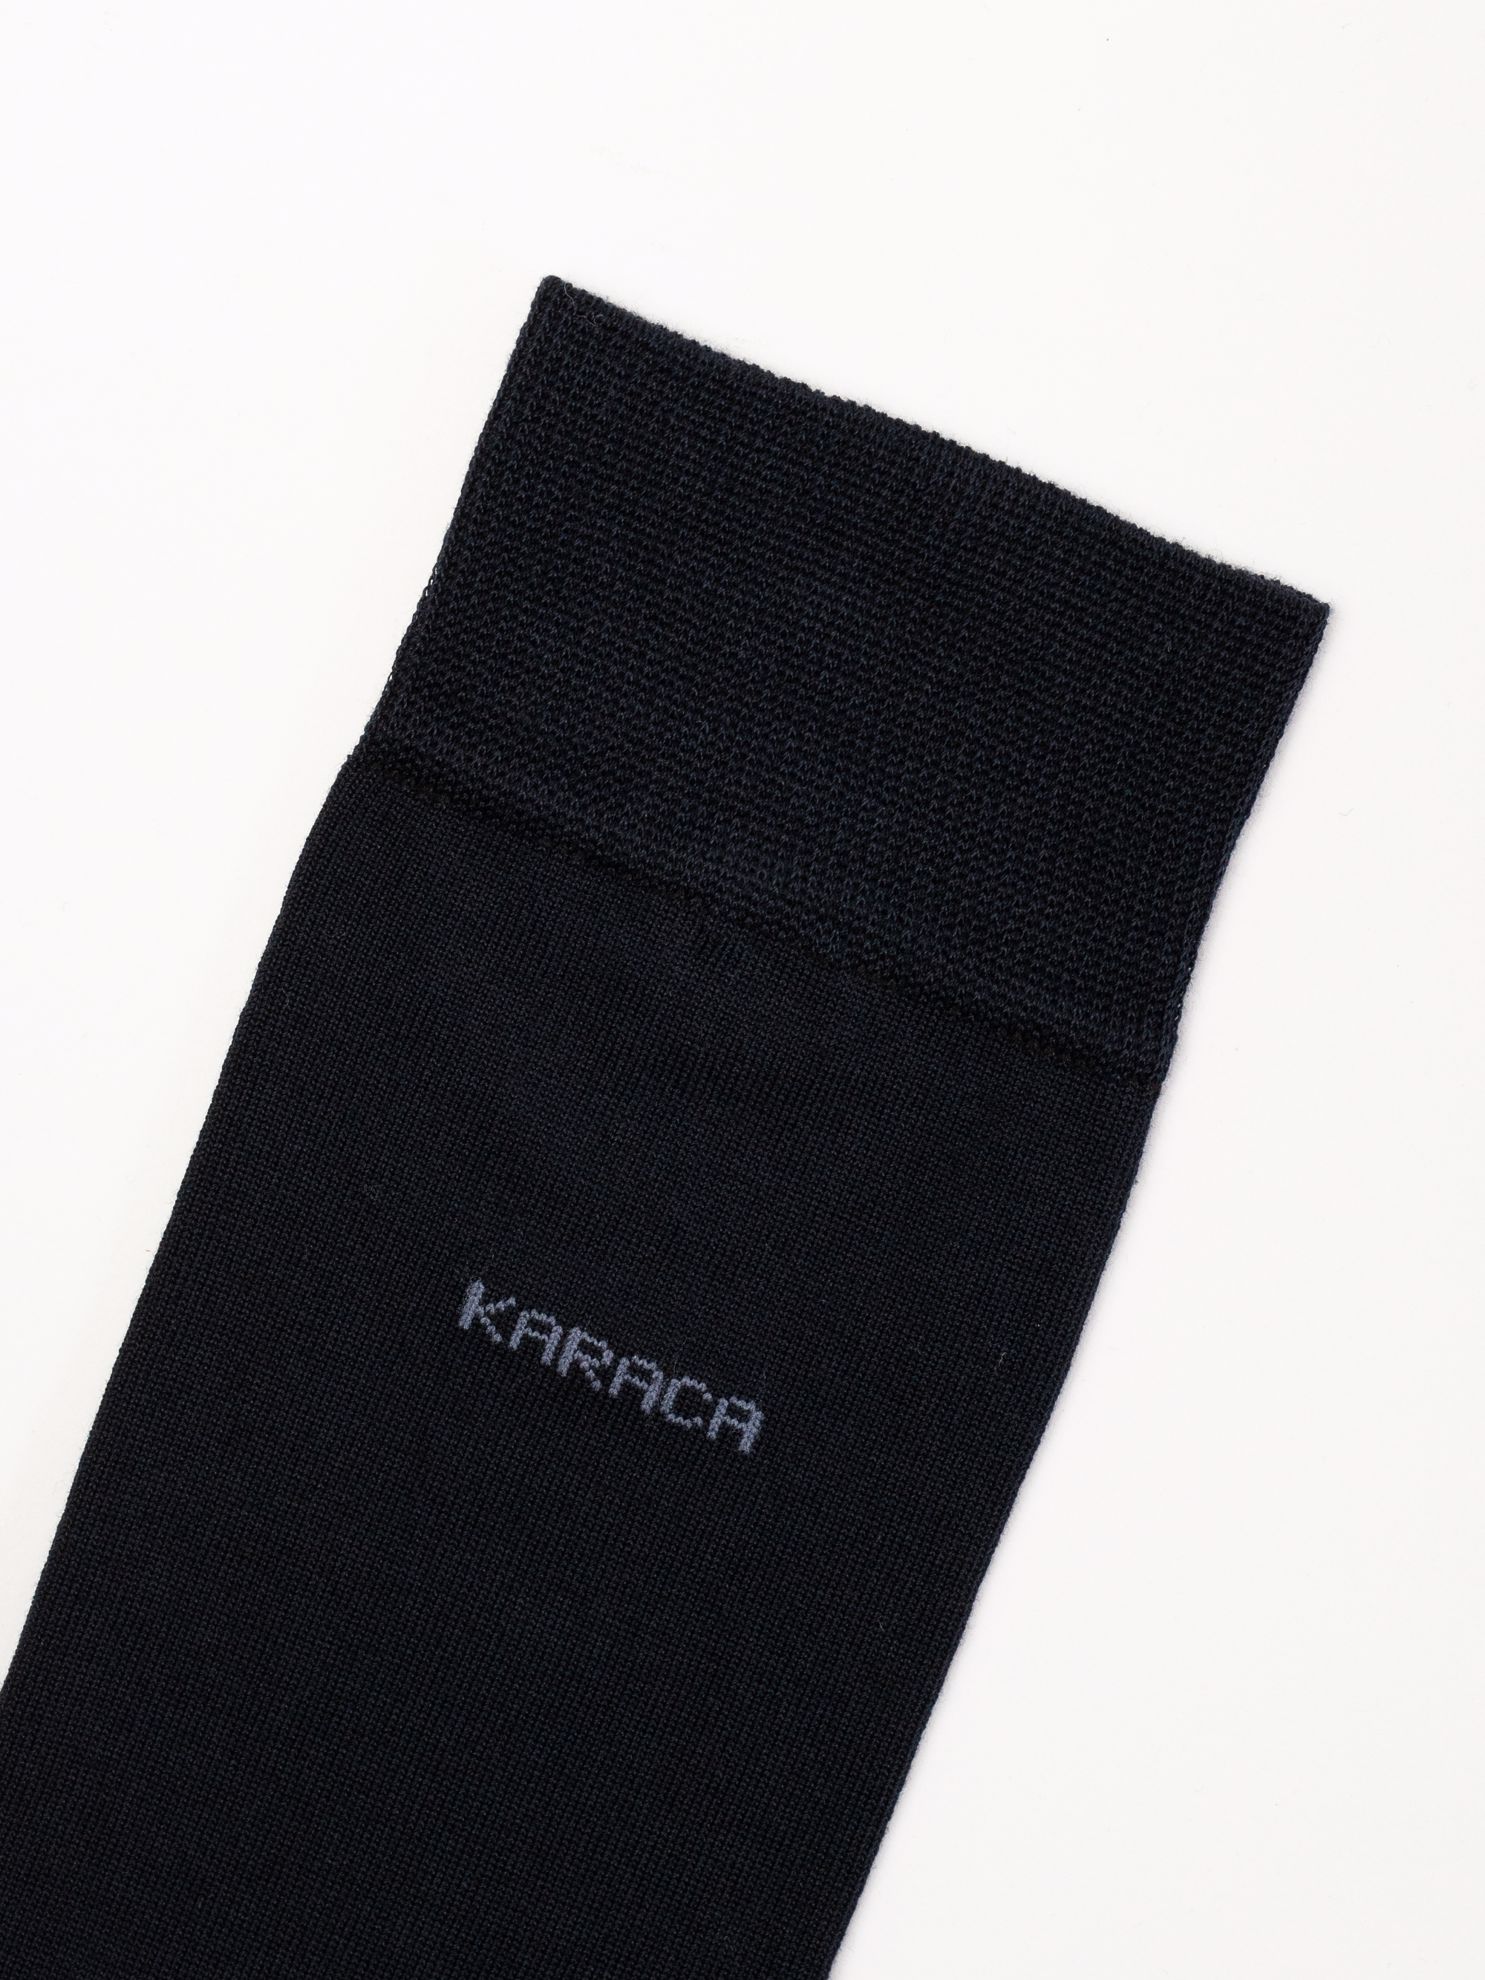 Karaca Erkek Soket Çorap-Lacivert. ürün görseli